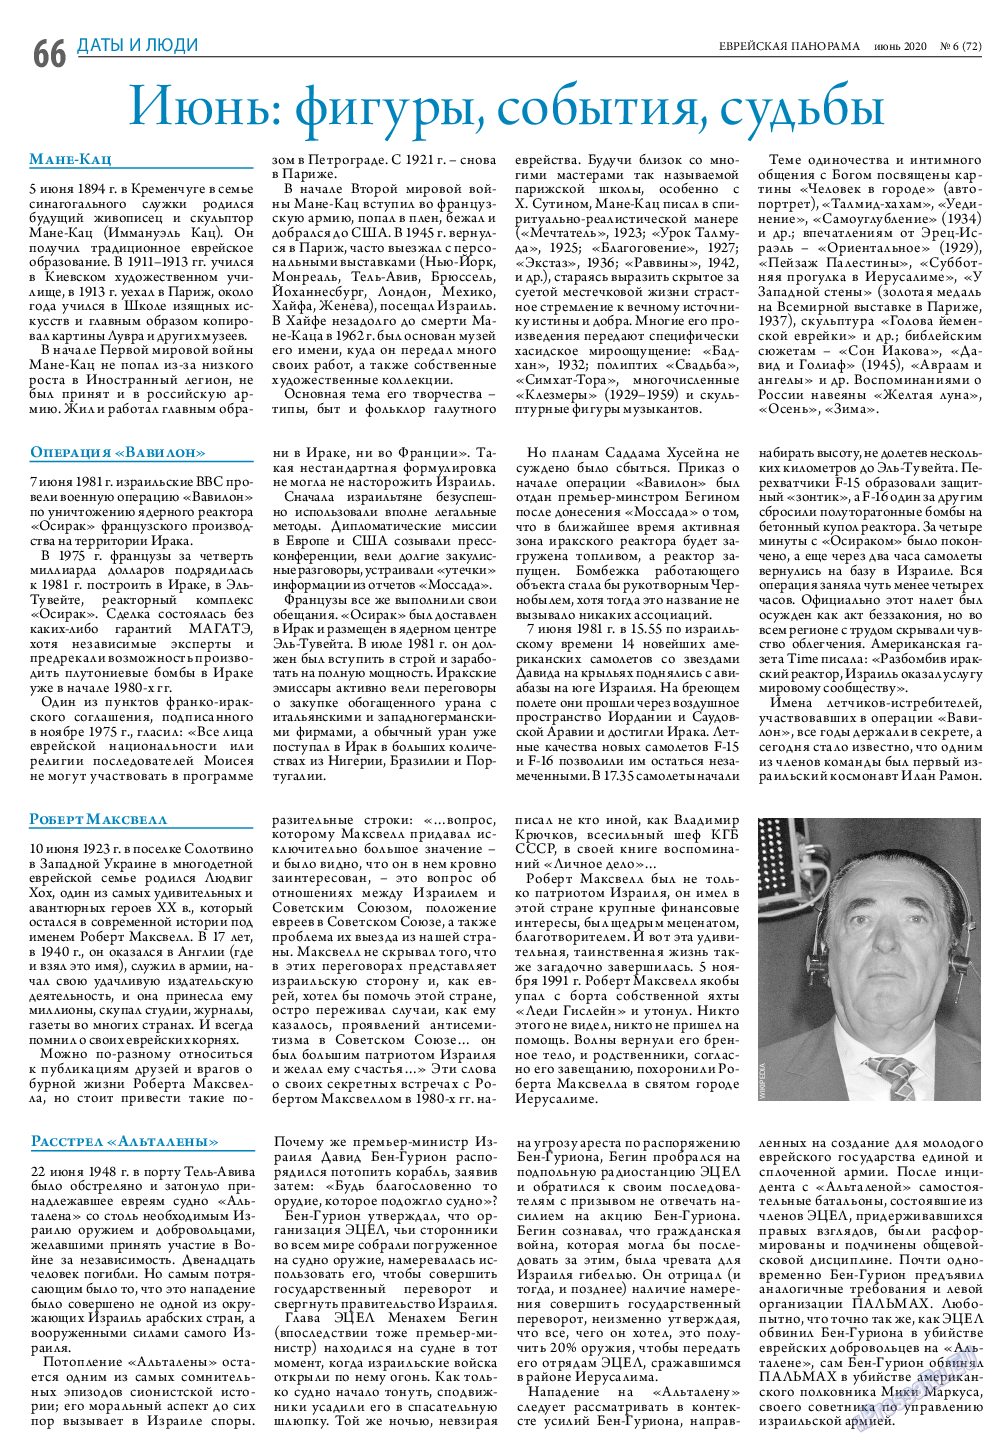 Еврейская панорама (газета). 2020 год, номер 6, стр. 66